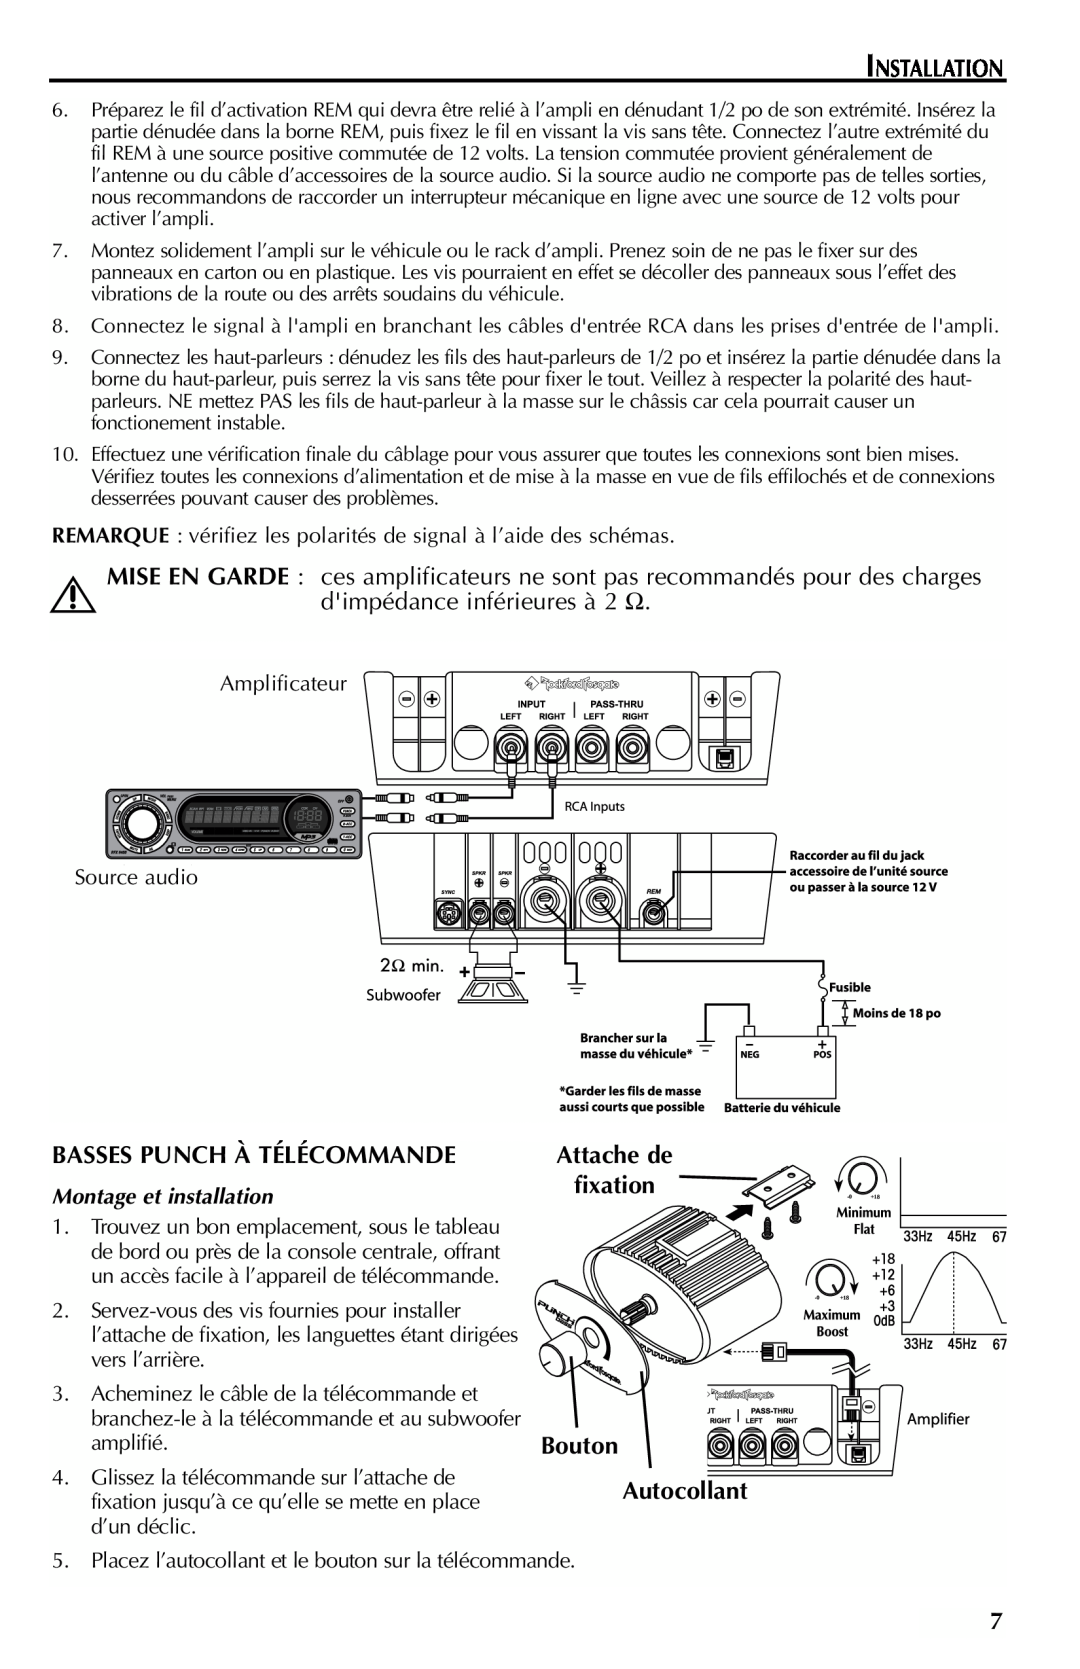 Rockford Fosgate FFX6 manual Installation, dimpédance inférieures à 2 Ω, Basses Punch À Télécommande, Bouton 